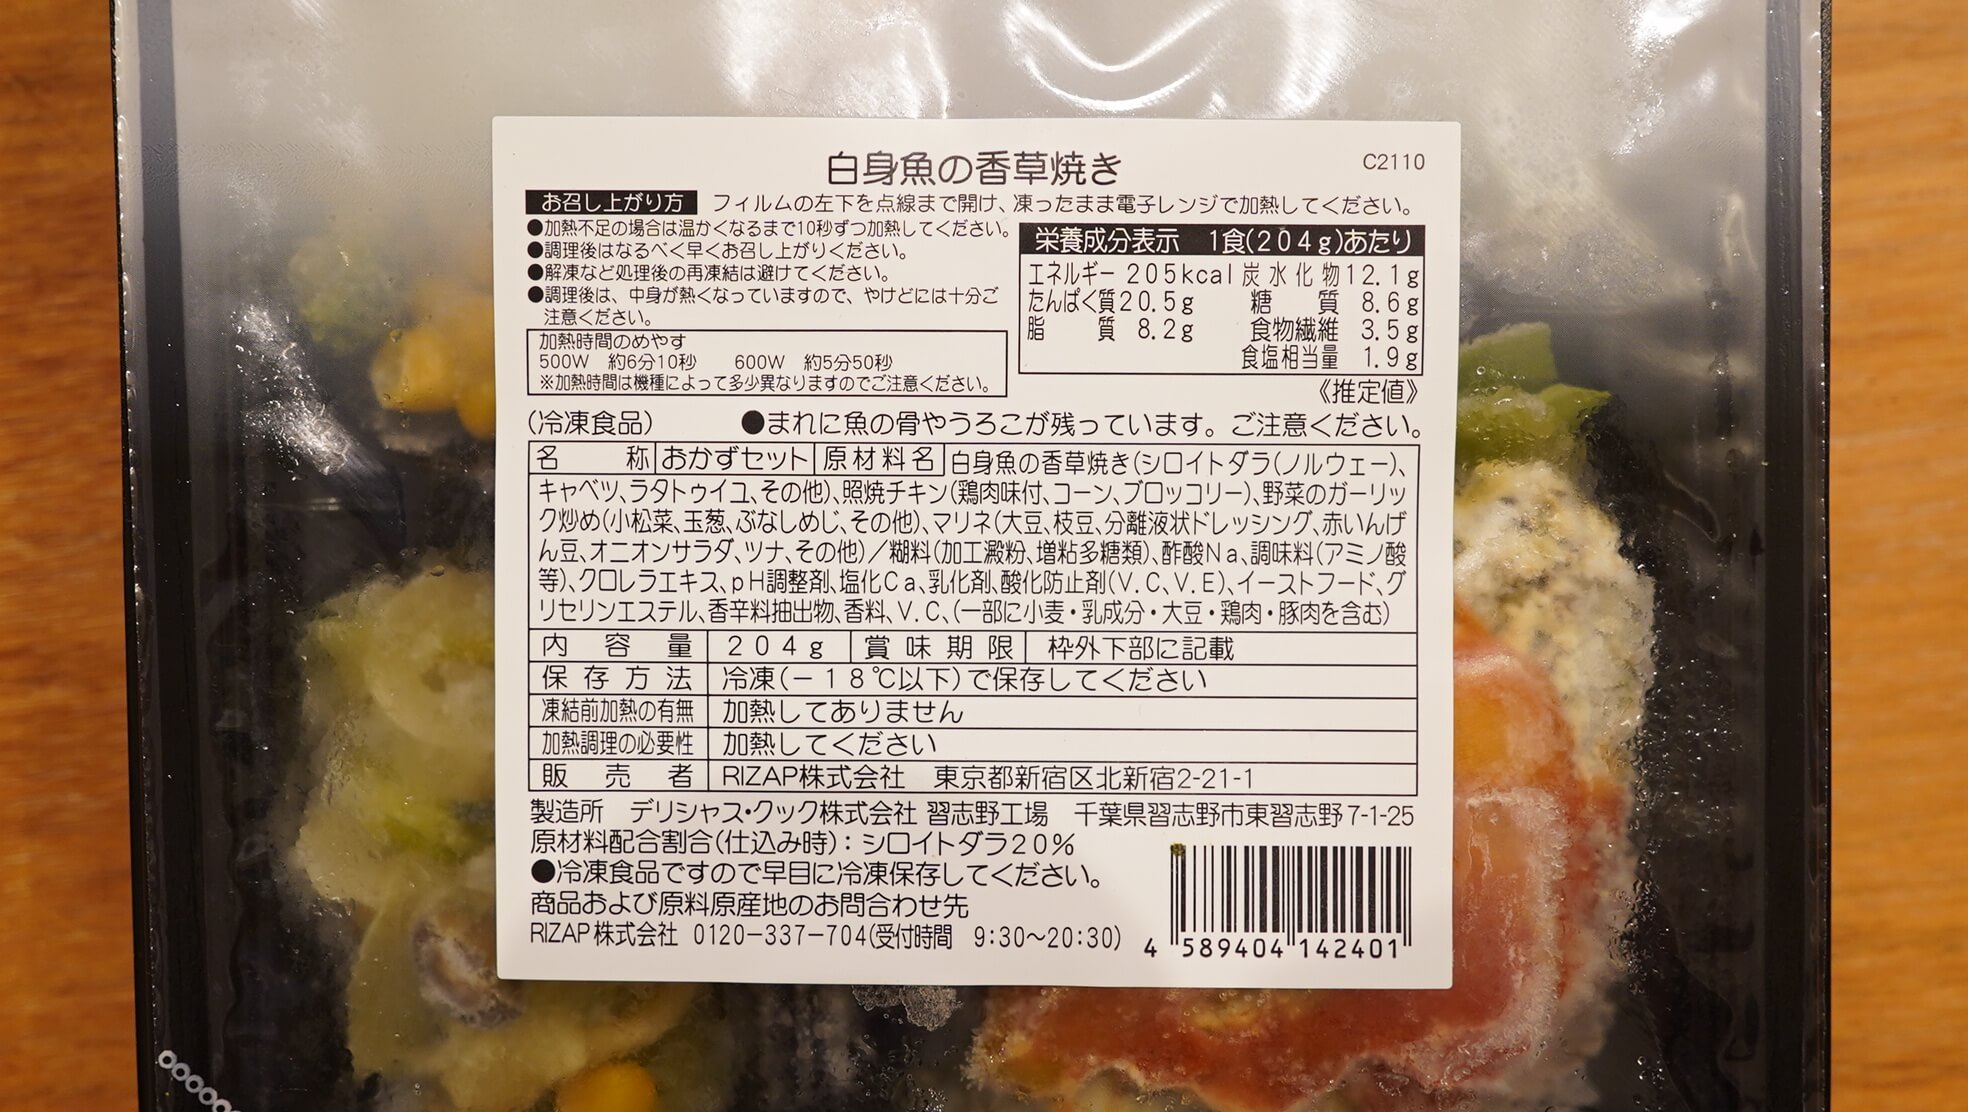 ライザップの冷凍弁当・サポートミール「白身魚の香草焼き」の栄養成分表